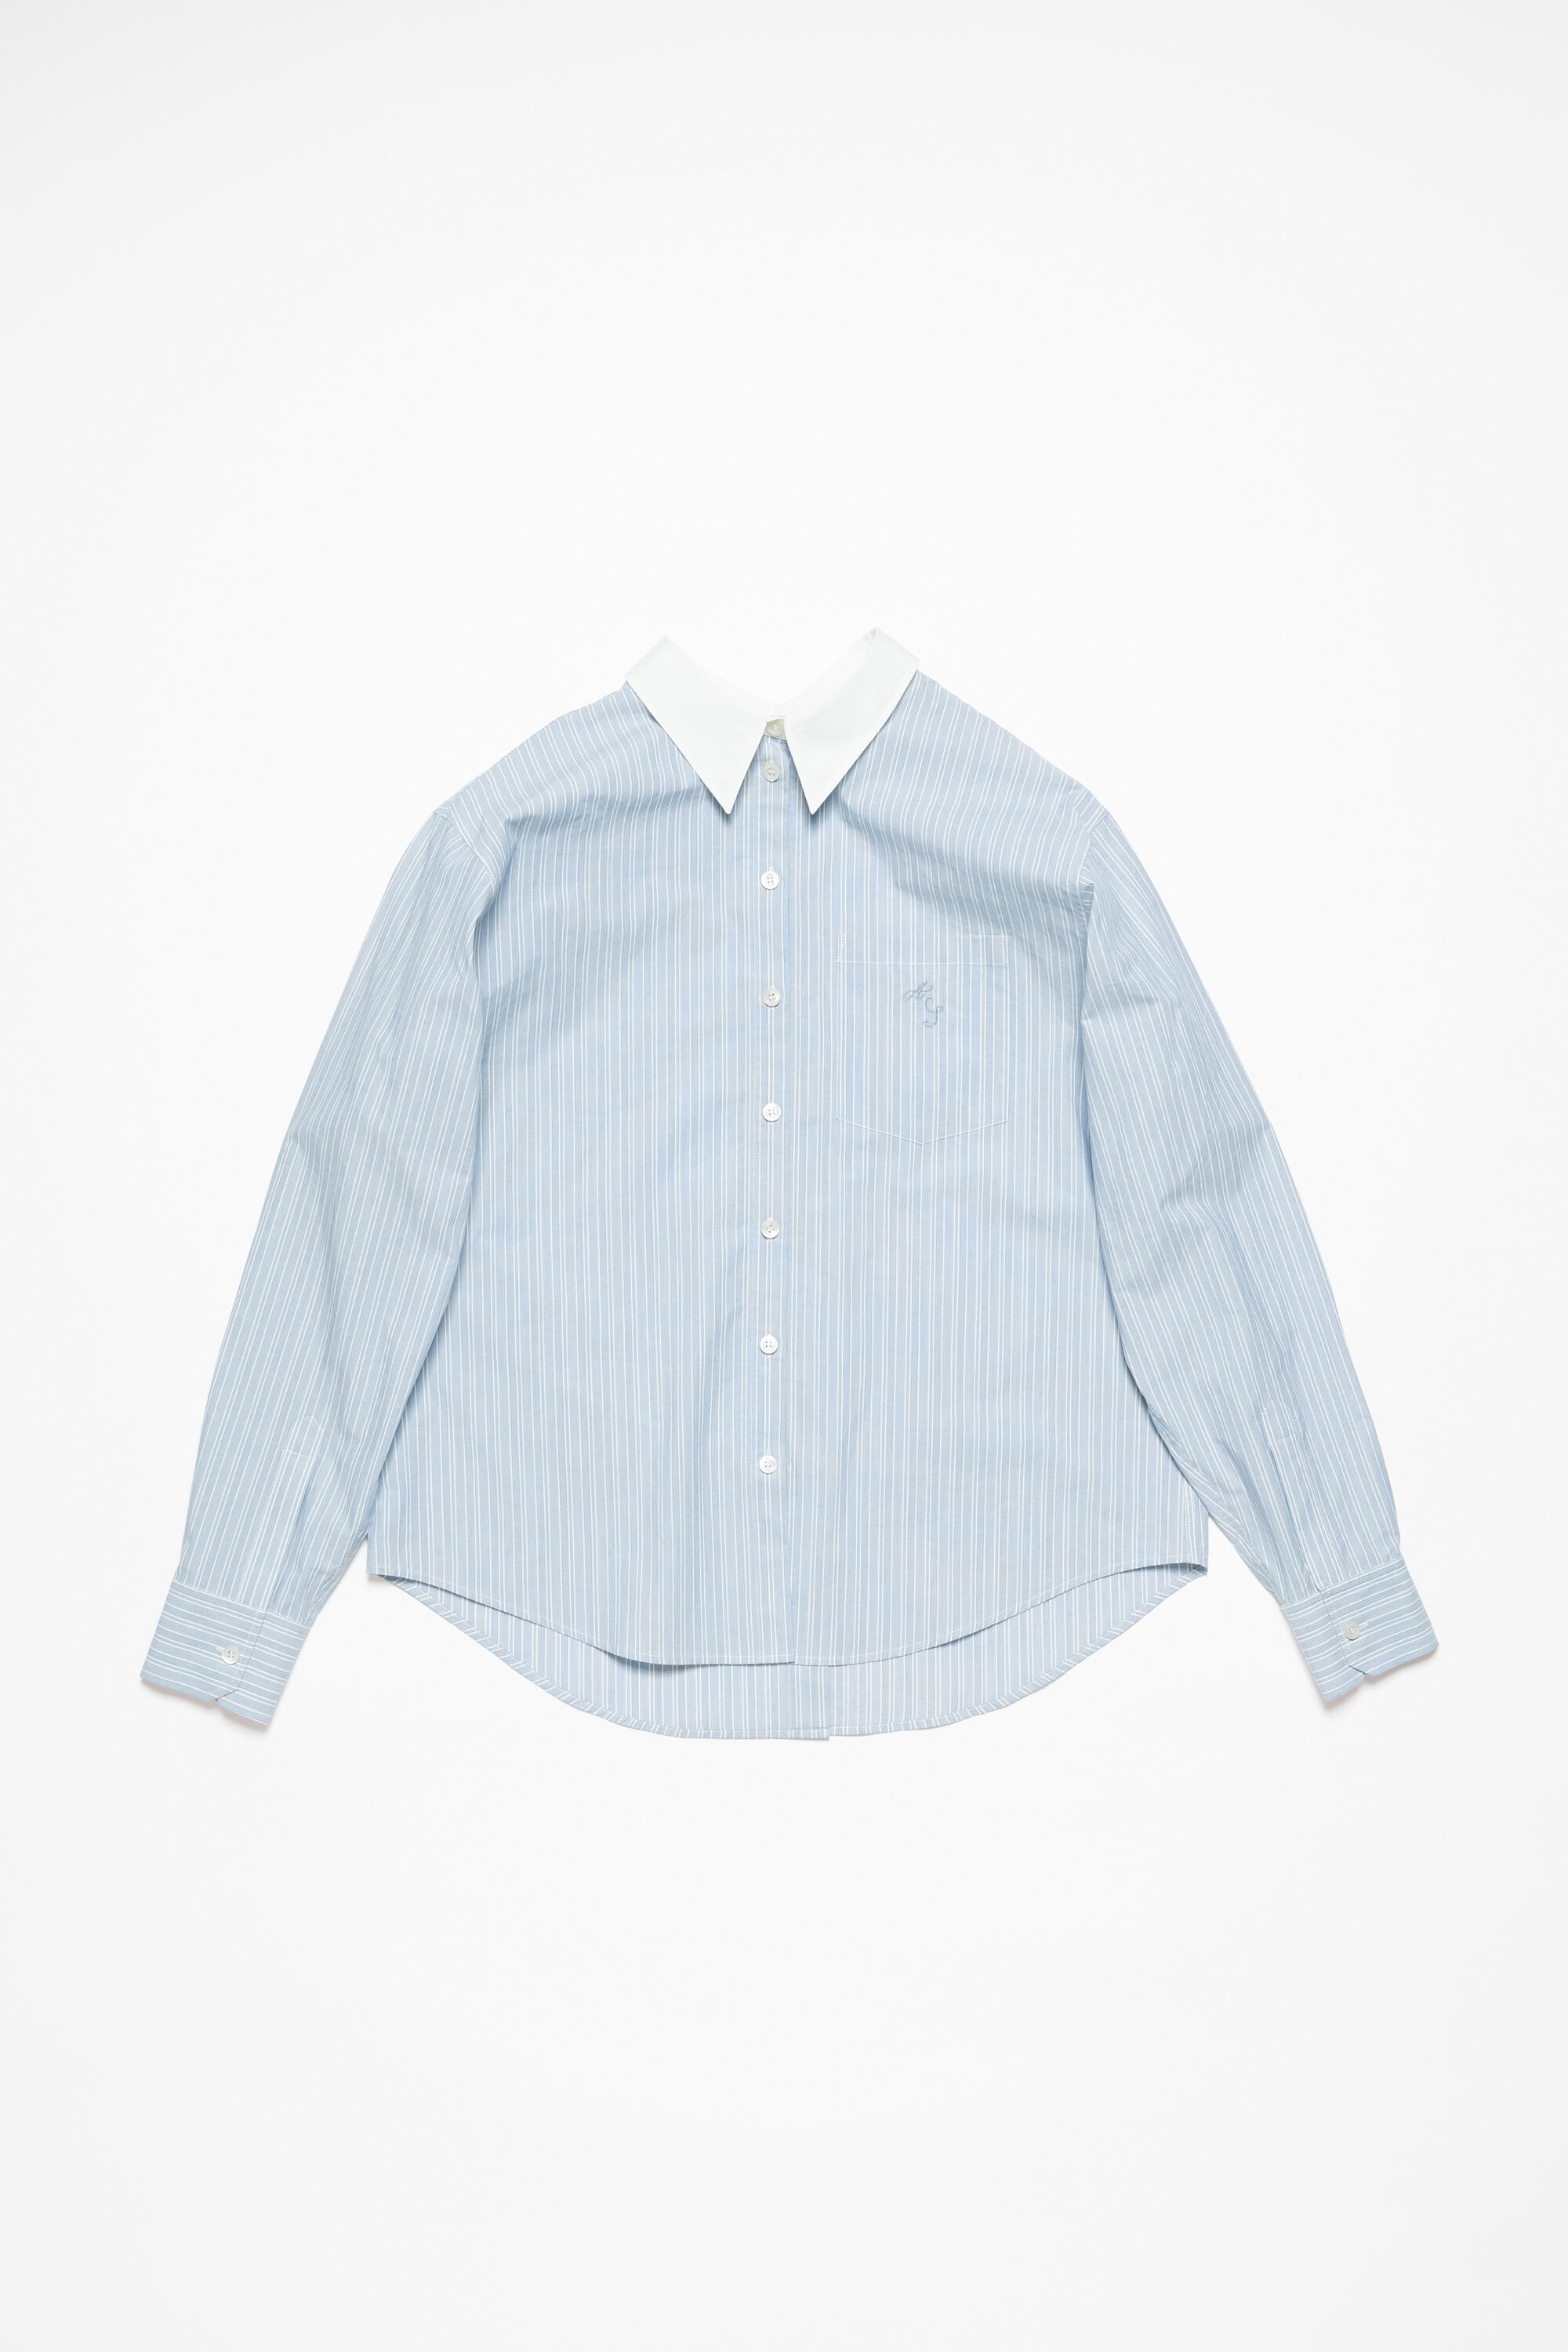 【新品未使用】ACNE STUDIOS ストライプ シャツ ブルー Mサイズシャツ